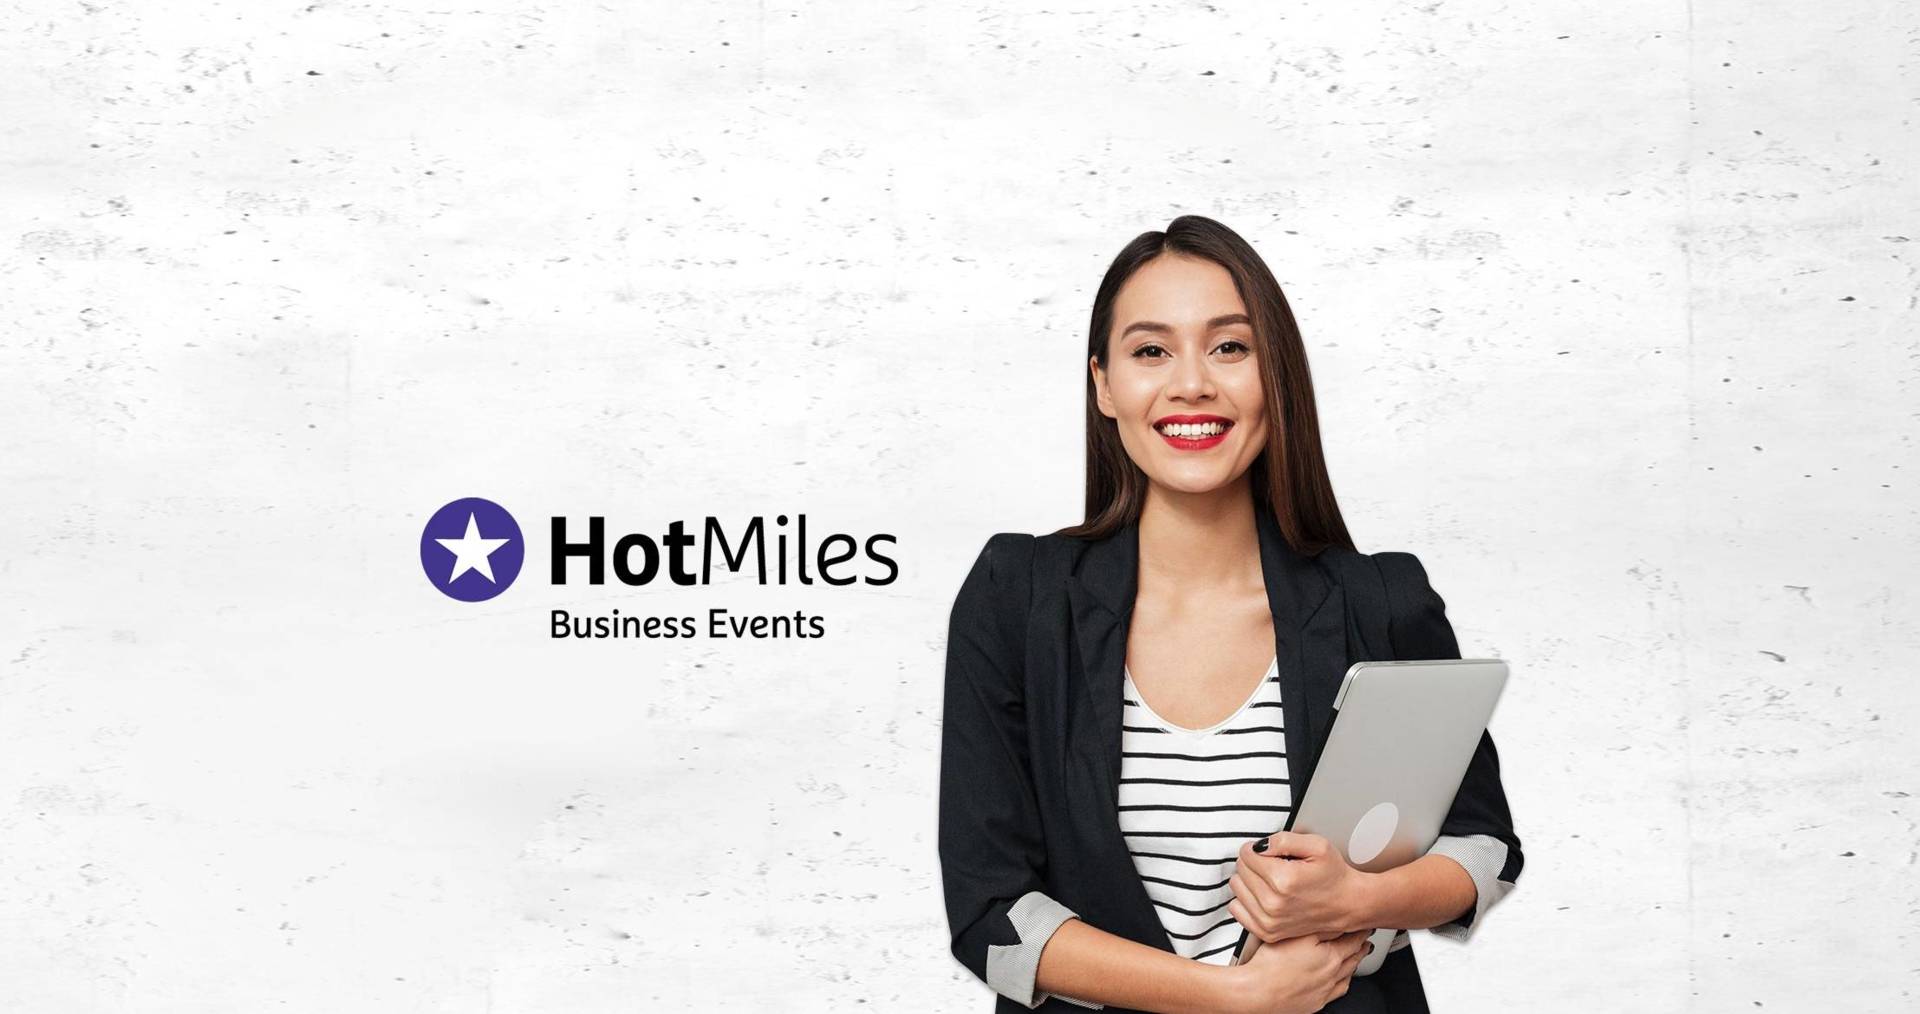 Häufig gestellte Fragen und Antworten zu HotMiles Business